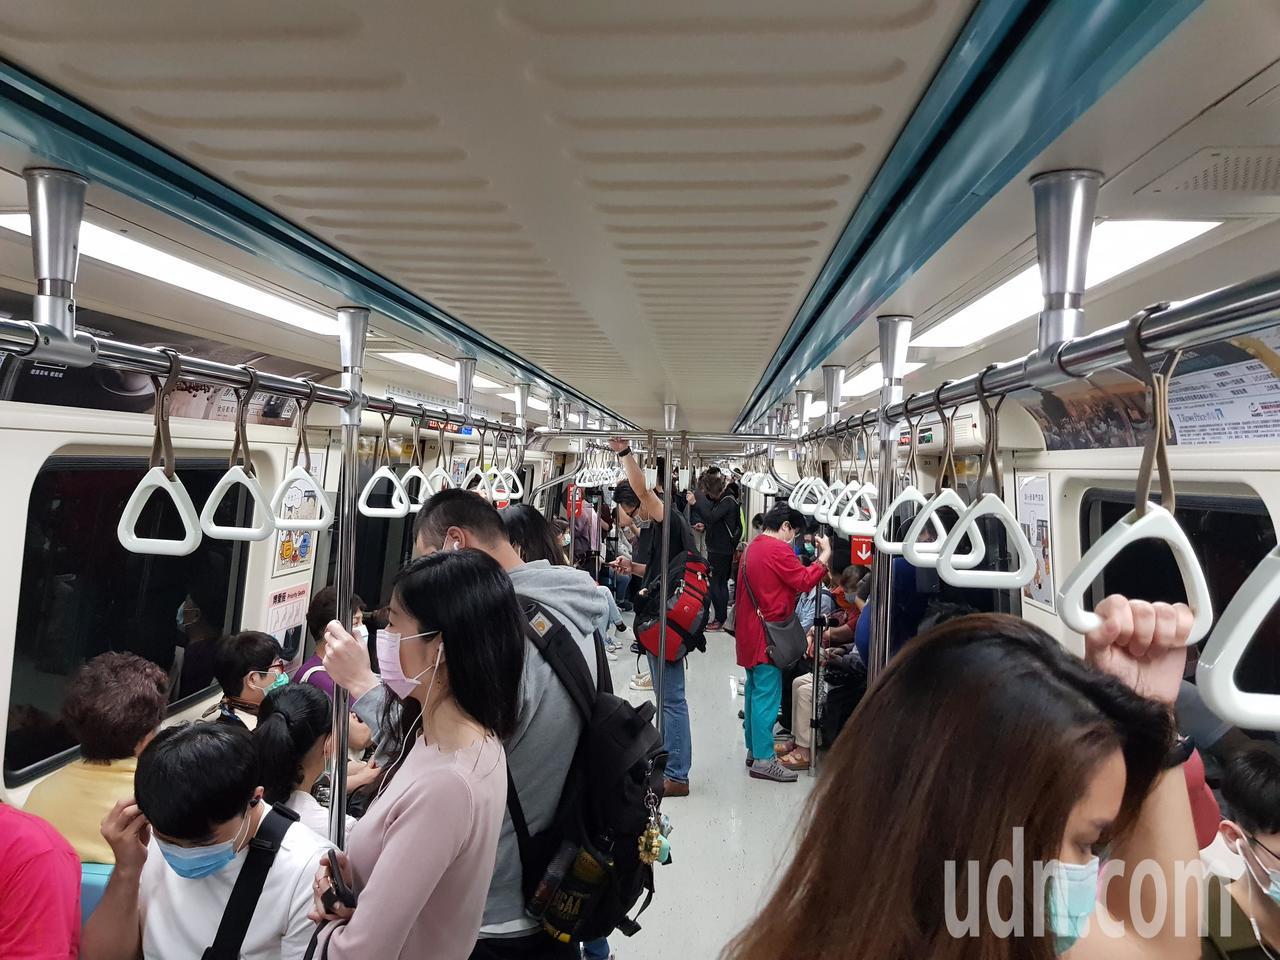 ，台北捷運公司今天公布自主研發的「車廂擁擠度即時告知功能」，即日起在高運量板南線共42輛列車、252個車廂試辦，亮黃燈代表人潮普通，車廂內移動容易。記者翁浩然／攝影